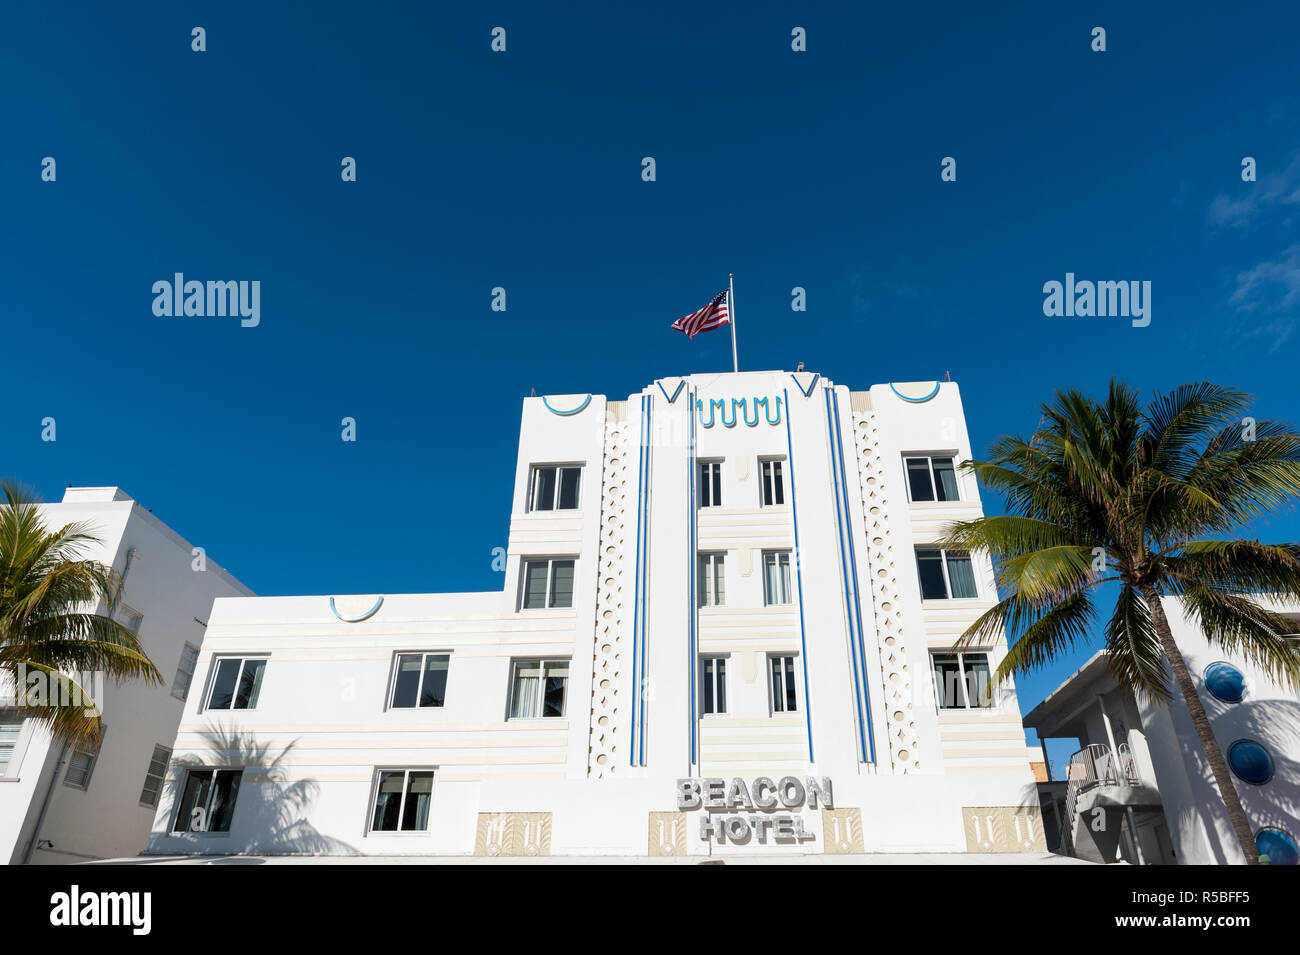 The Beacon Hotel, Ocean Drive, South Beach, Miami Beach, Florida, USA. Stock Photo